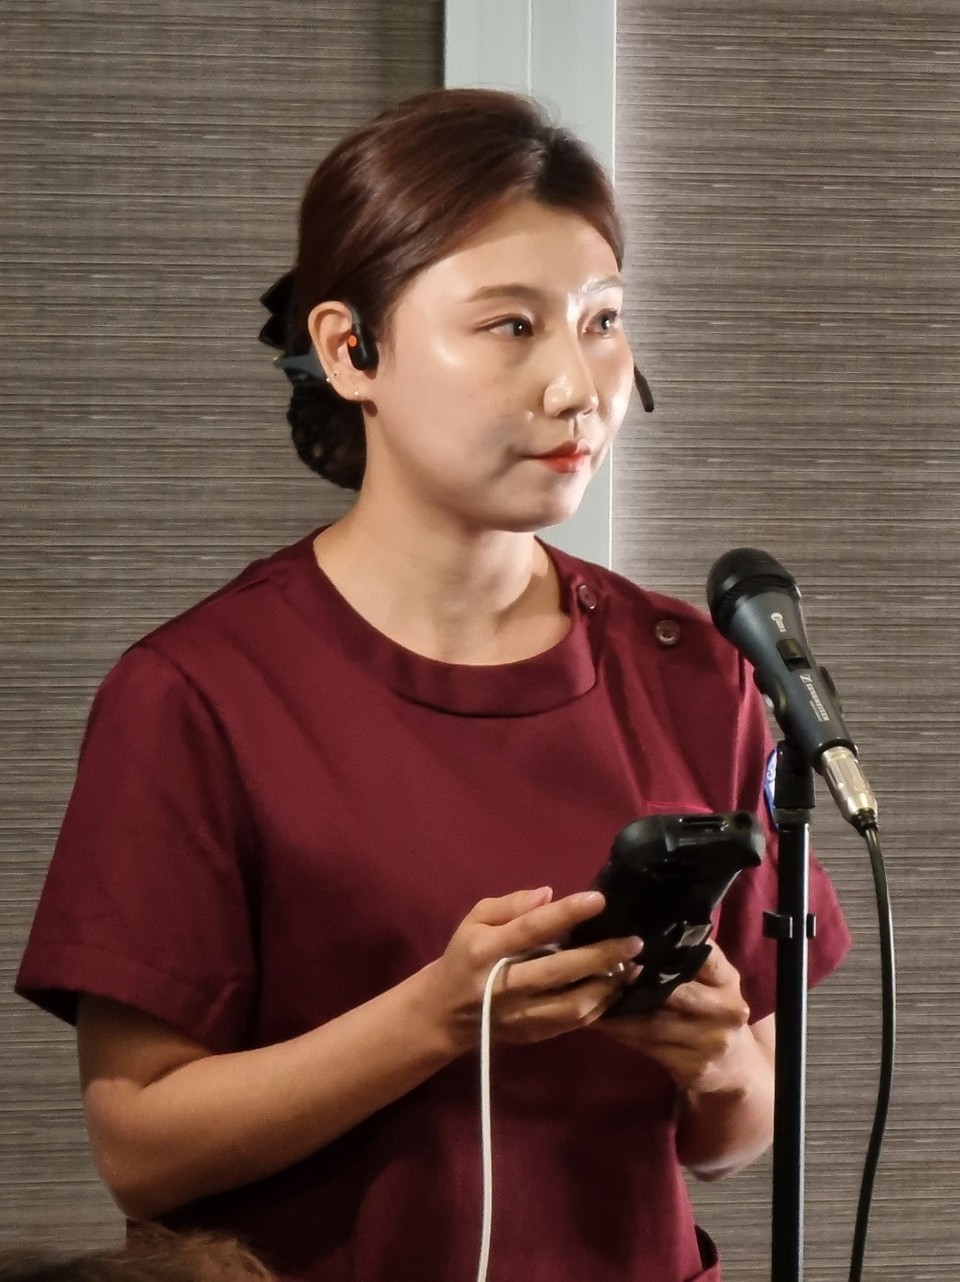 블루투스 이어폰과 PDA 기기을 착용해 ‘모바일 Voice ENR’을 시연하는 모습. 